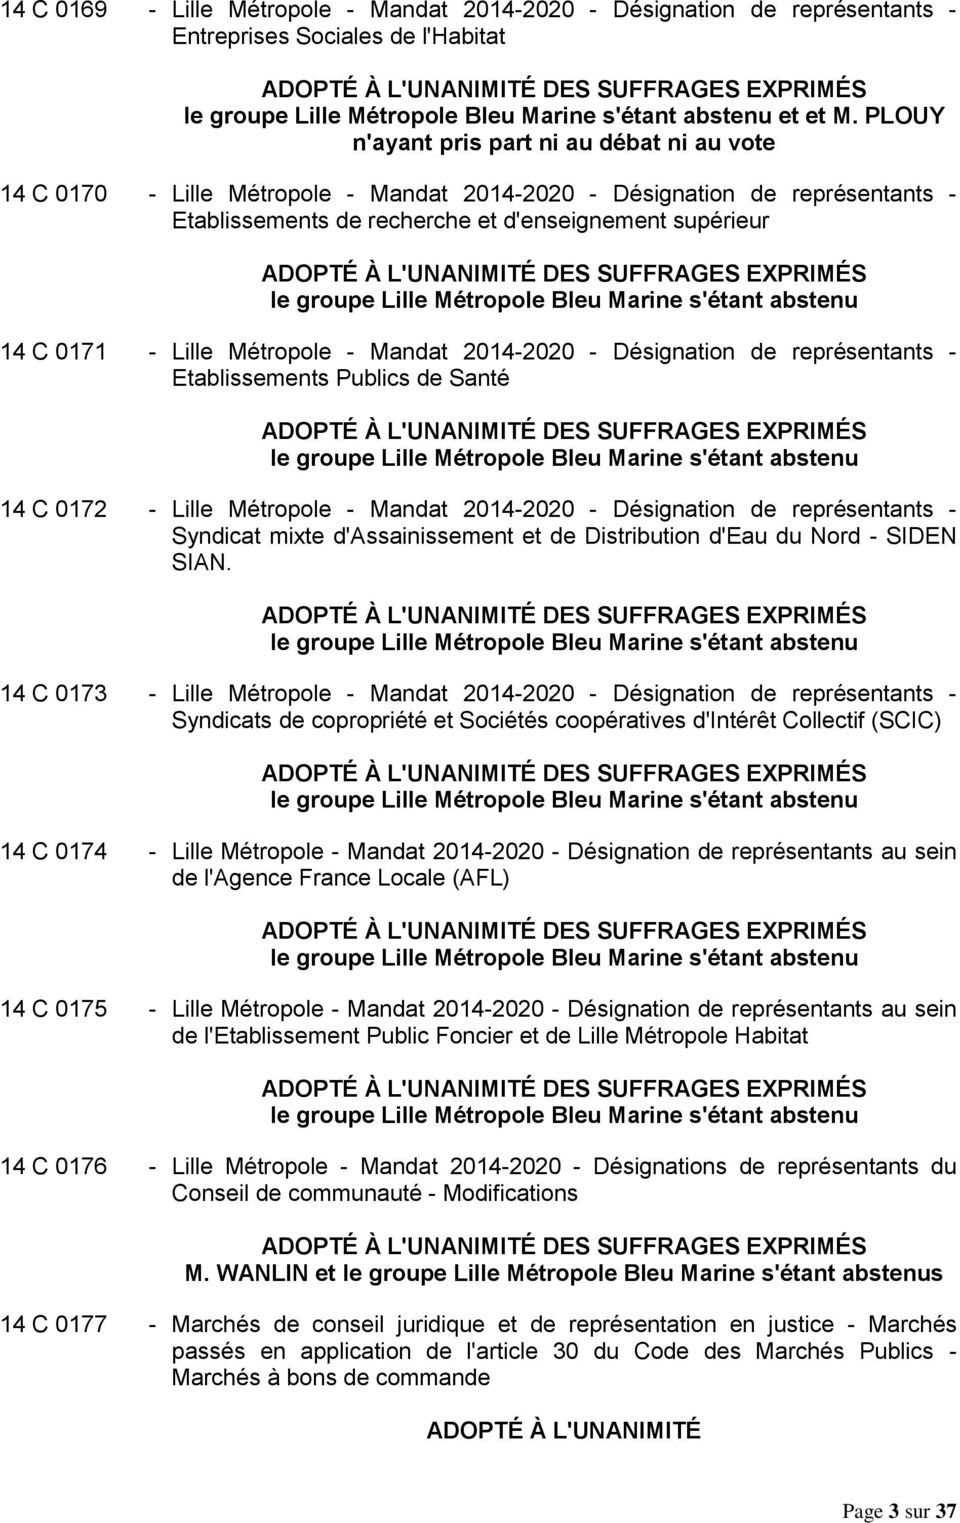 EXPRIMÉS 14 C 0171 - Lille Métropole - Mandat 2014-2020 - Désignation de représentants - Etablissements Publics de Santé DES SUFFRAGES EXPRIMÉS 14 C 0172 - Lille Métropole - Mandat 2014-2020 -